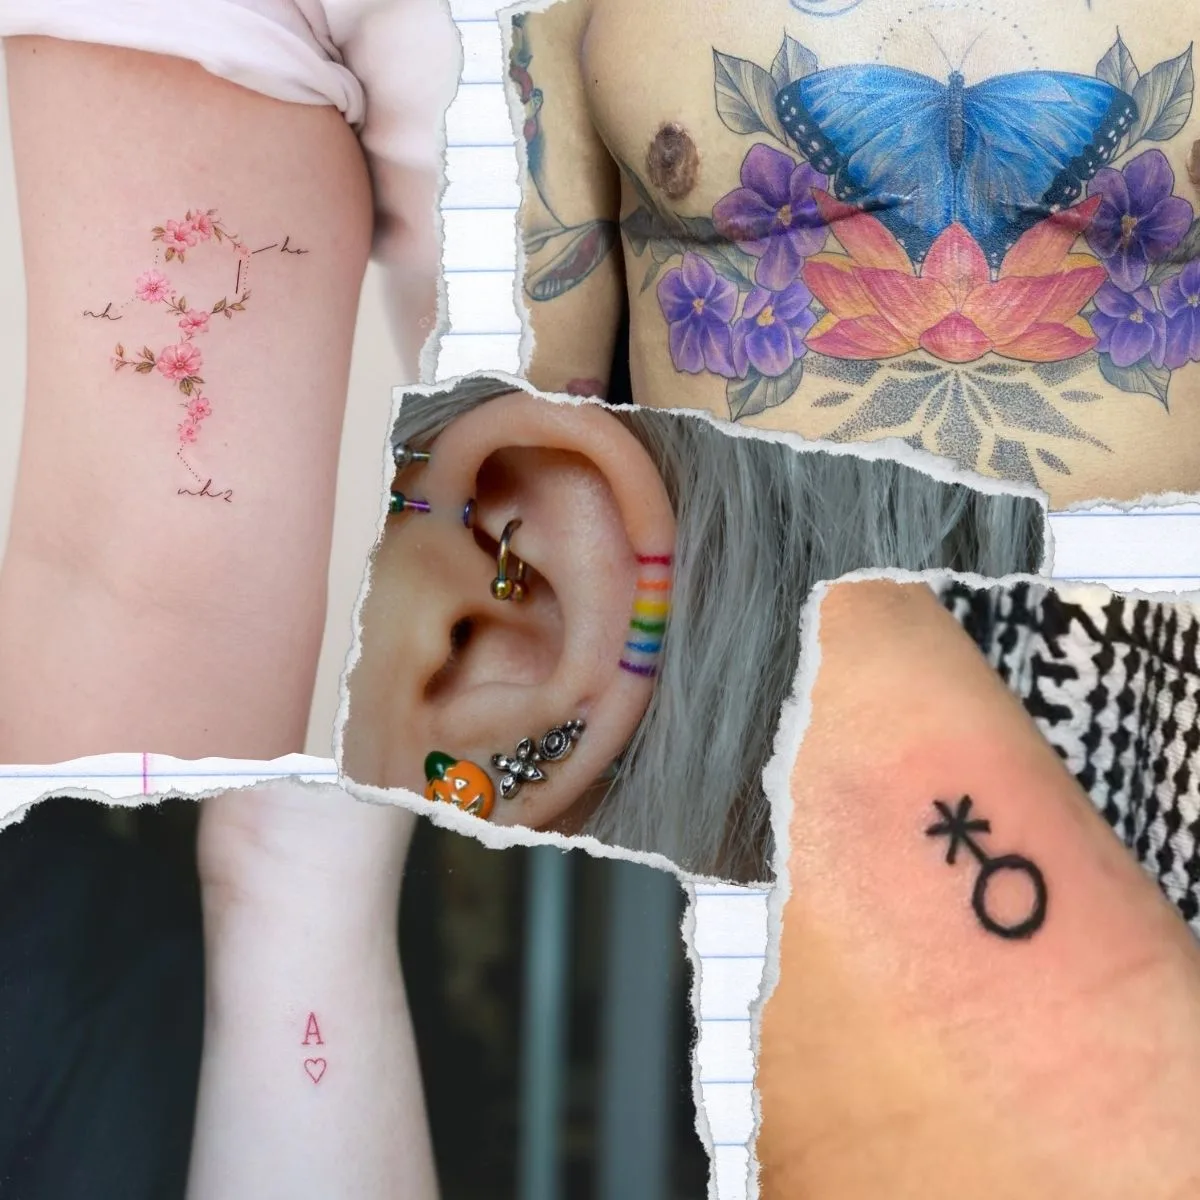 Queer tattoo ideas